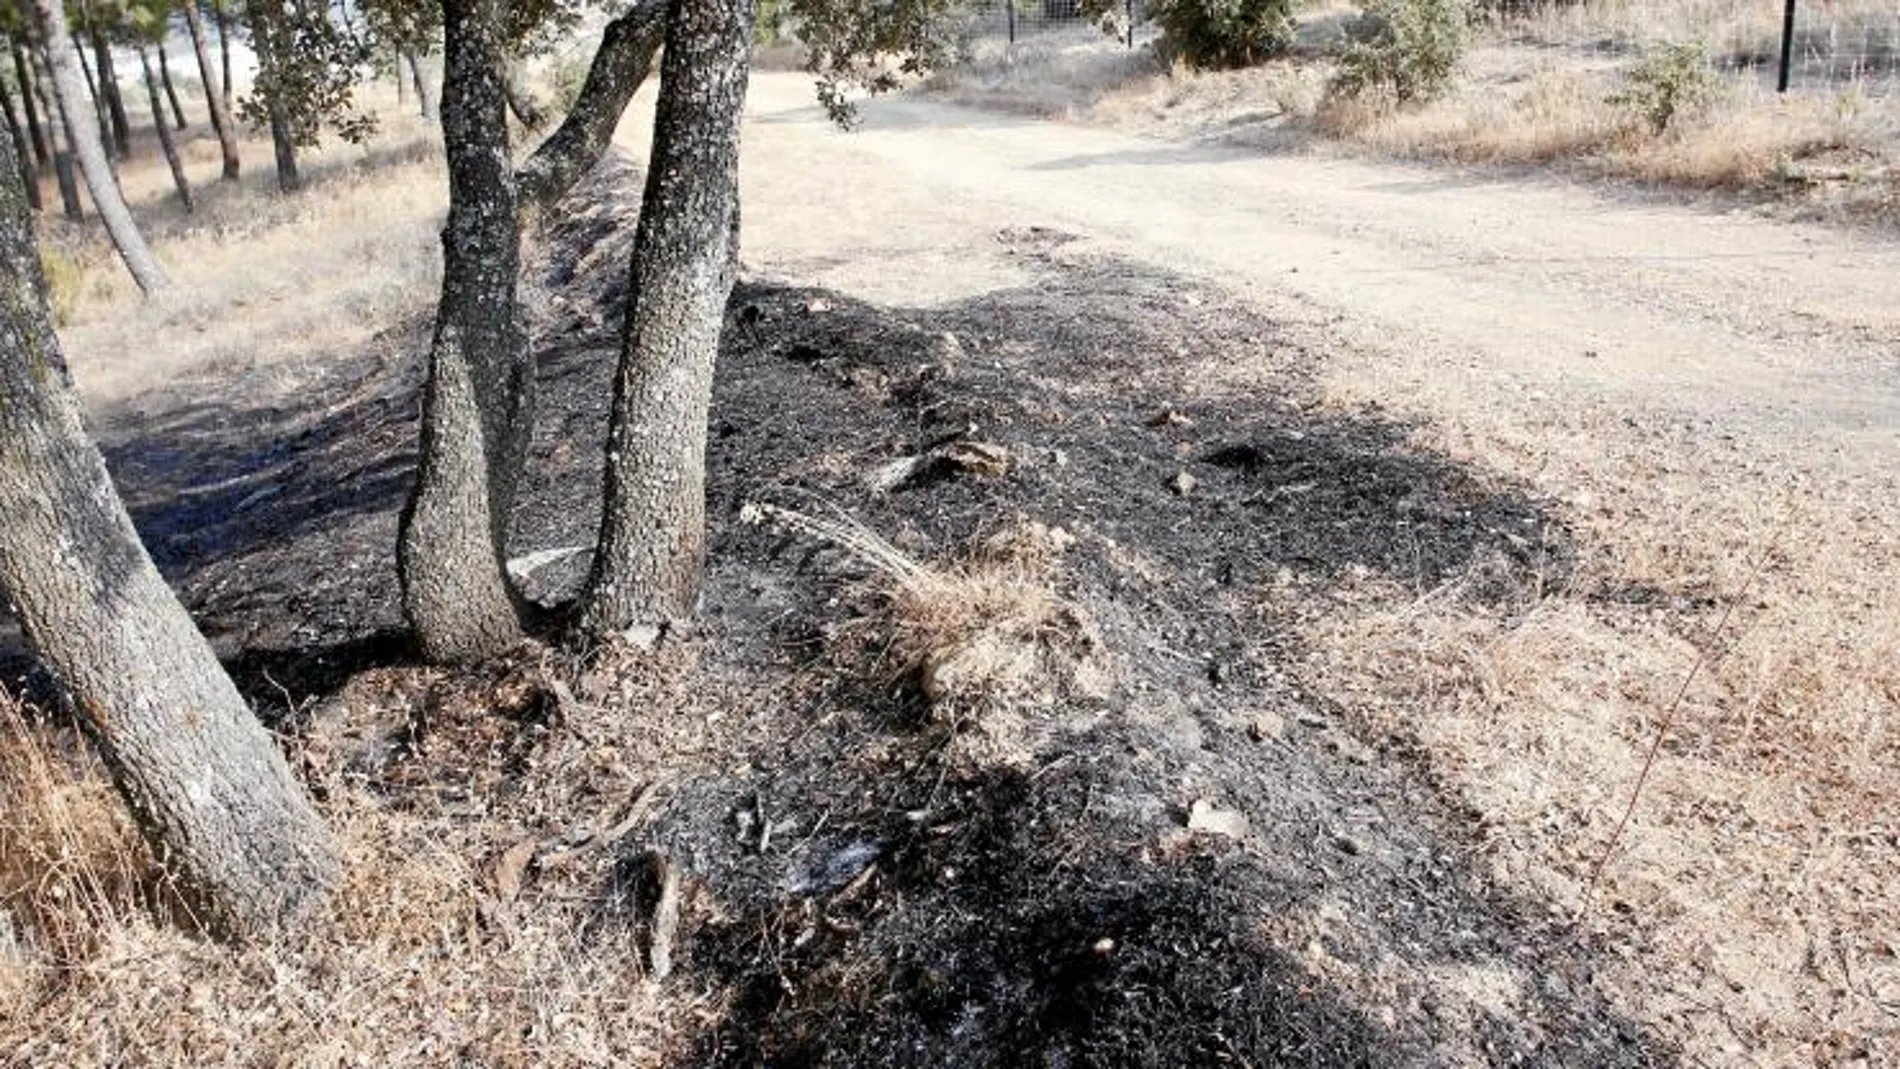 El paraje quemado en Navas, donde los Bomberos registraron siete focos distintos, está situado en una zona frecuentada por senderistas. Se trata de un camino forestal a la altura del kilómetro 42 de la M-501